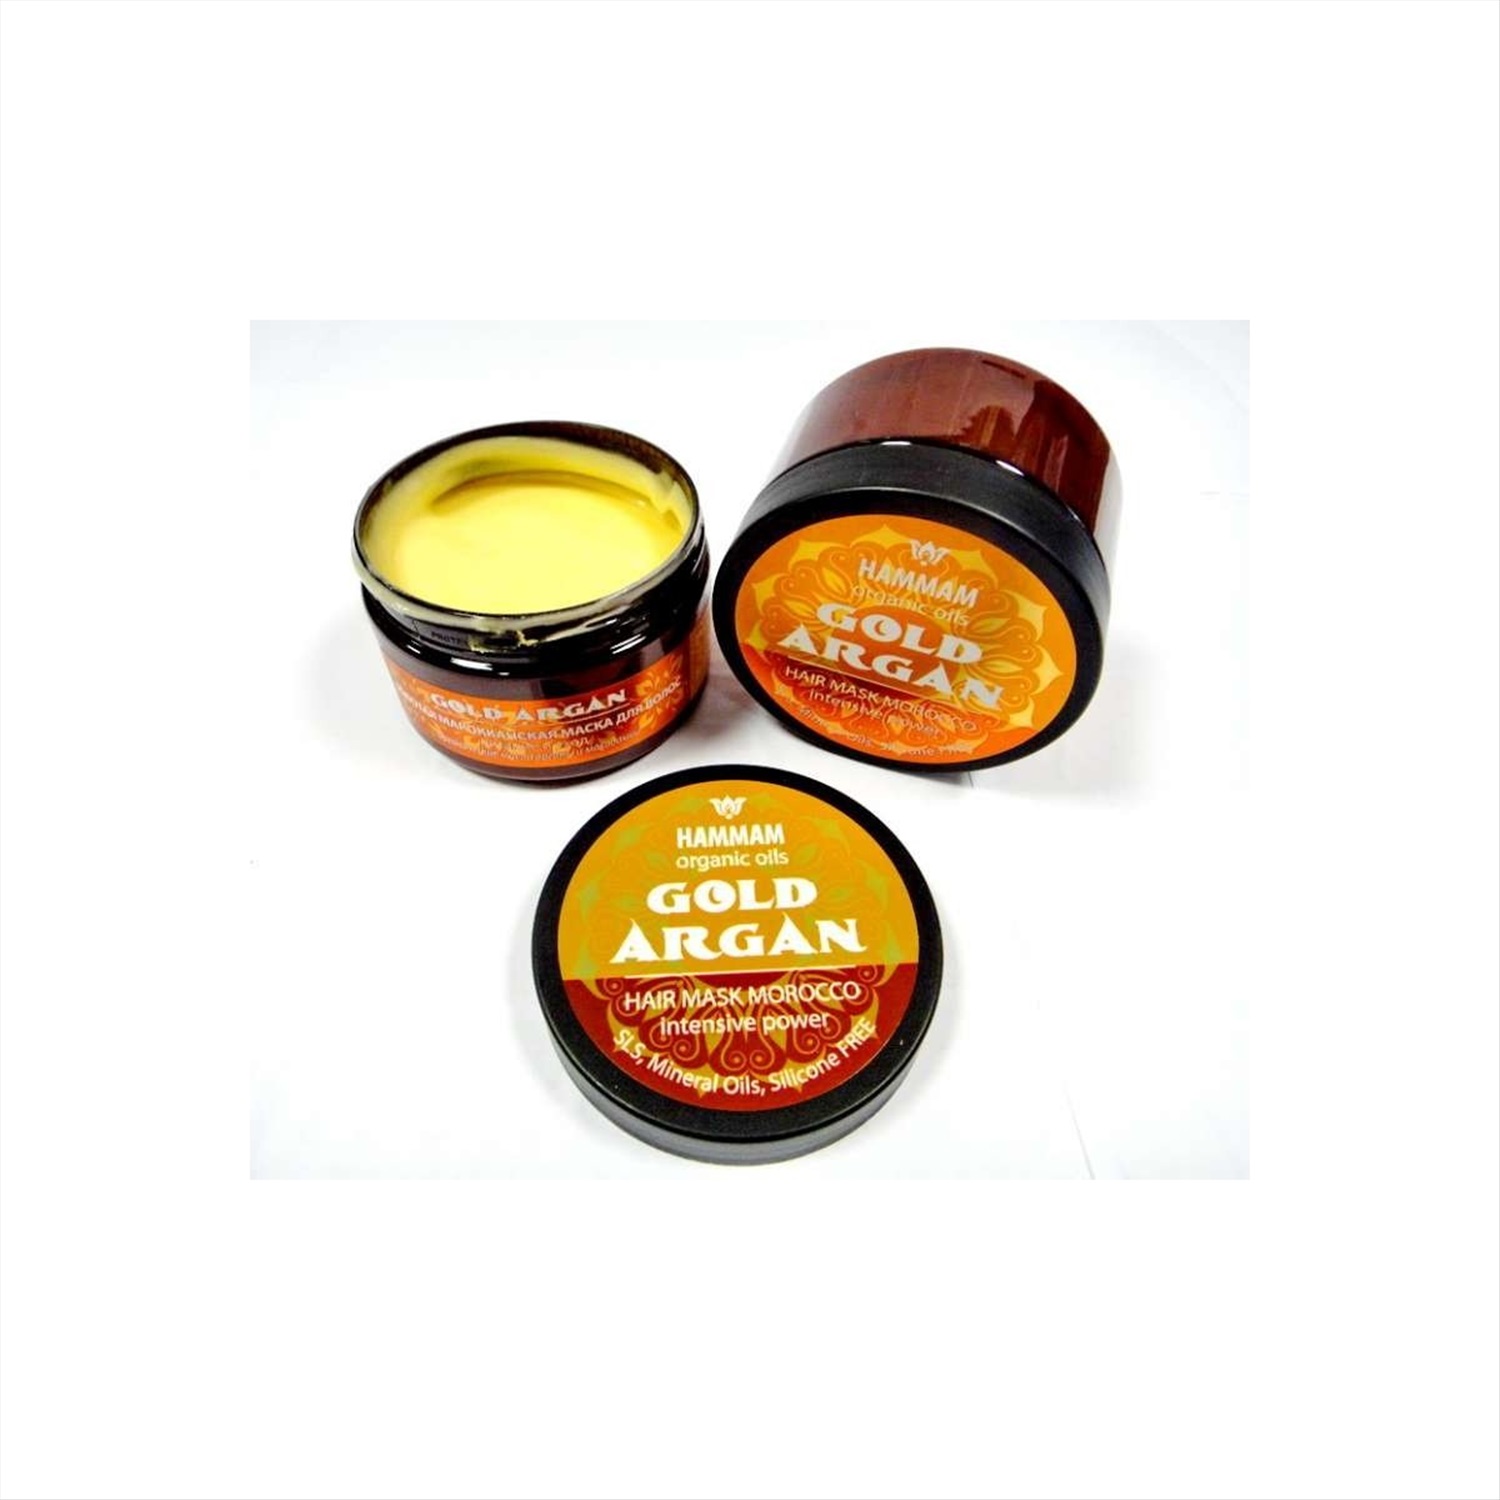 Hammam organic oils маска для волос gold argan питание и уход марокканская